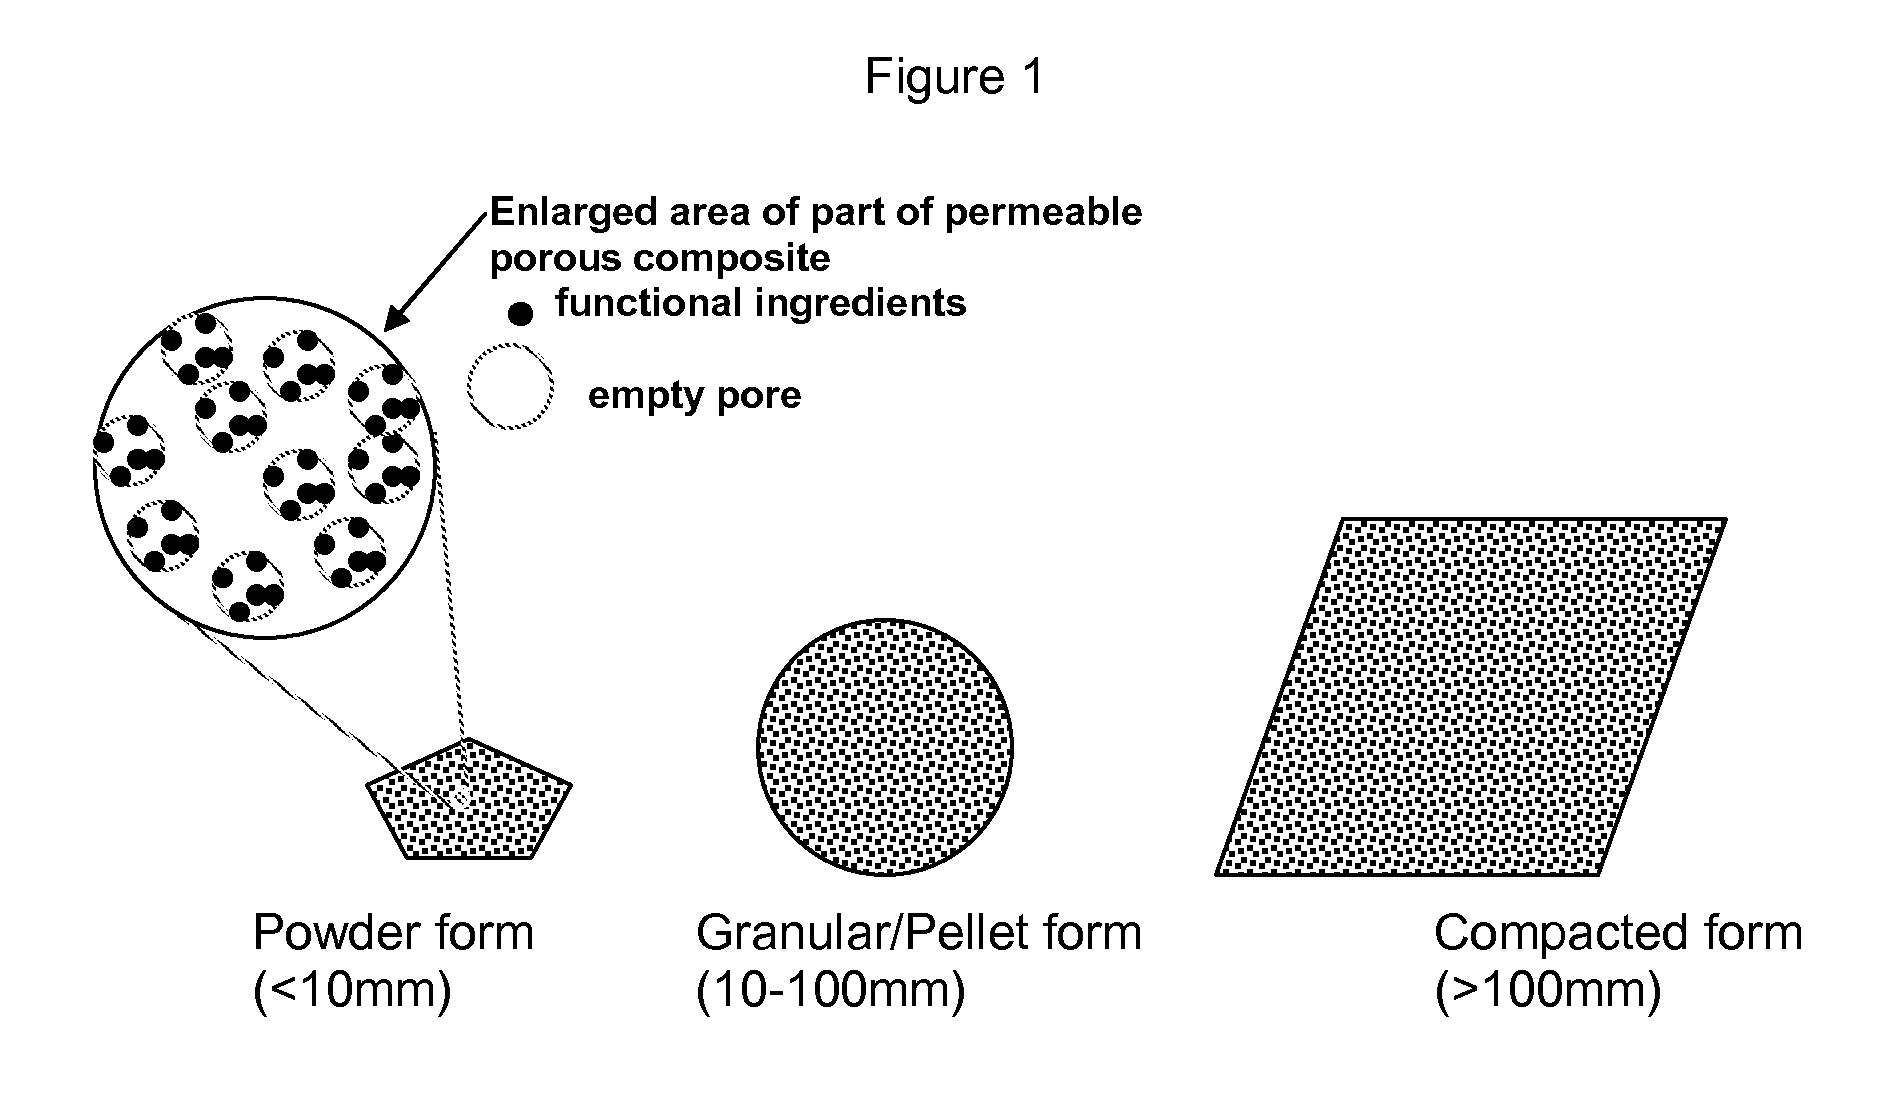 Permeable porous composite